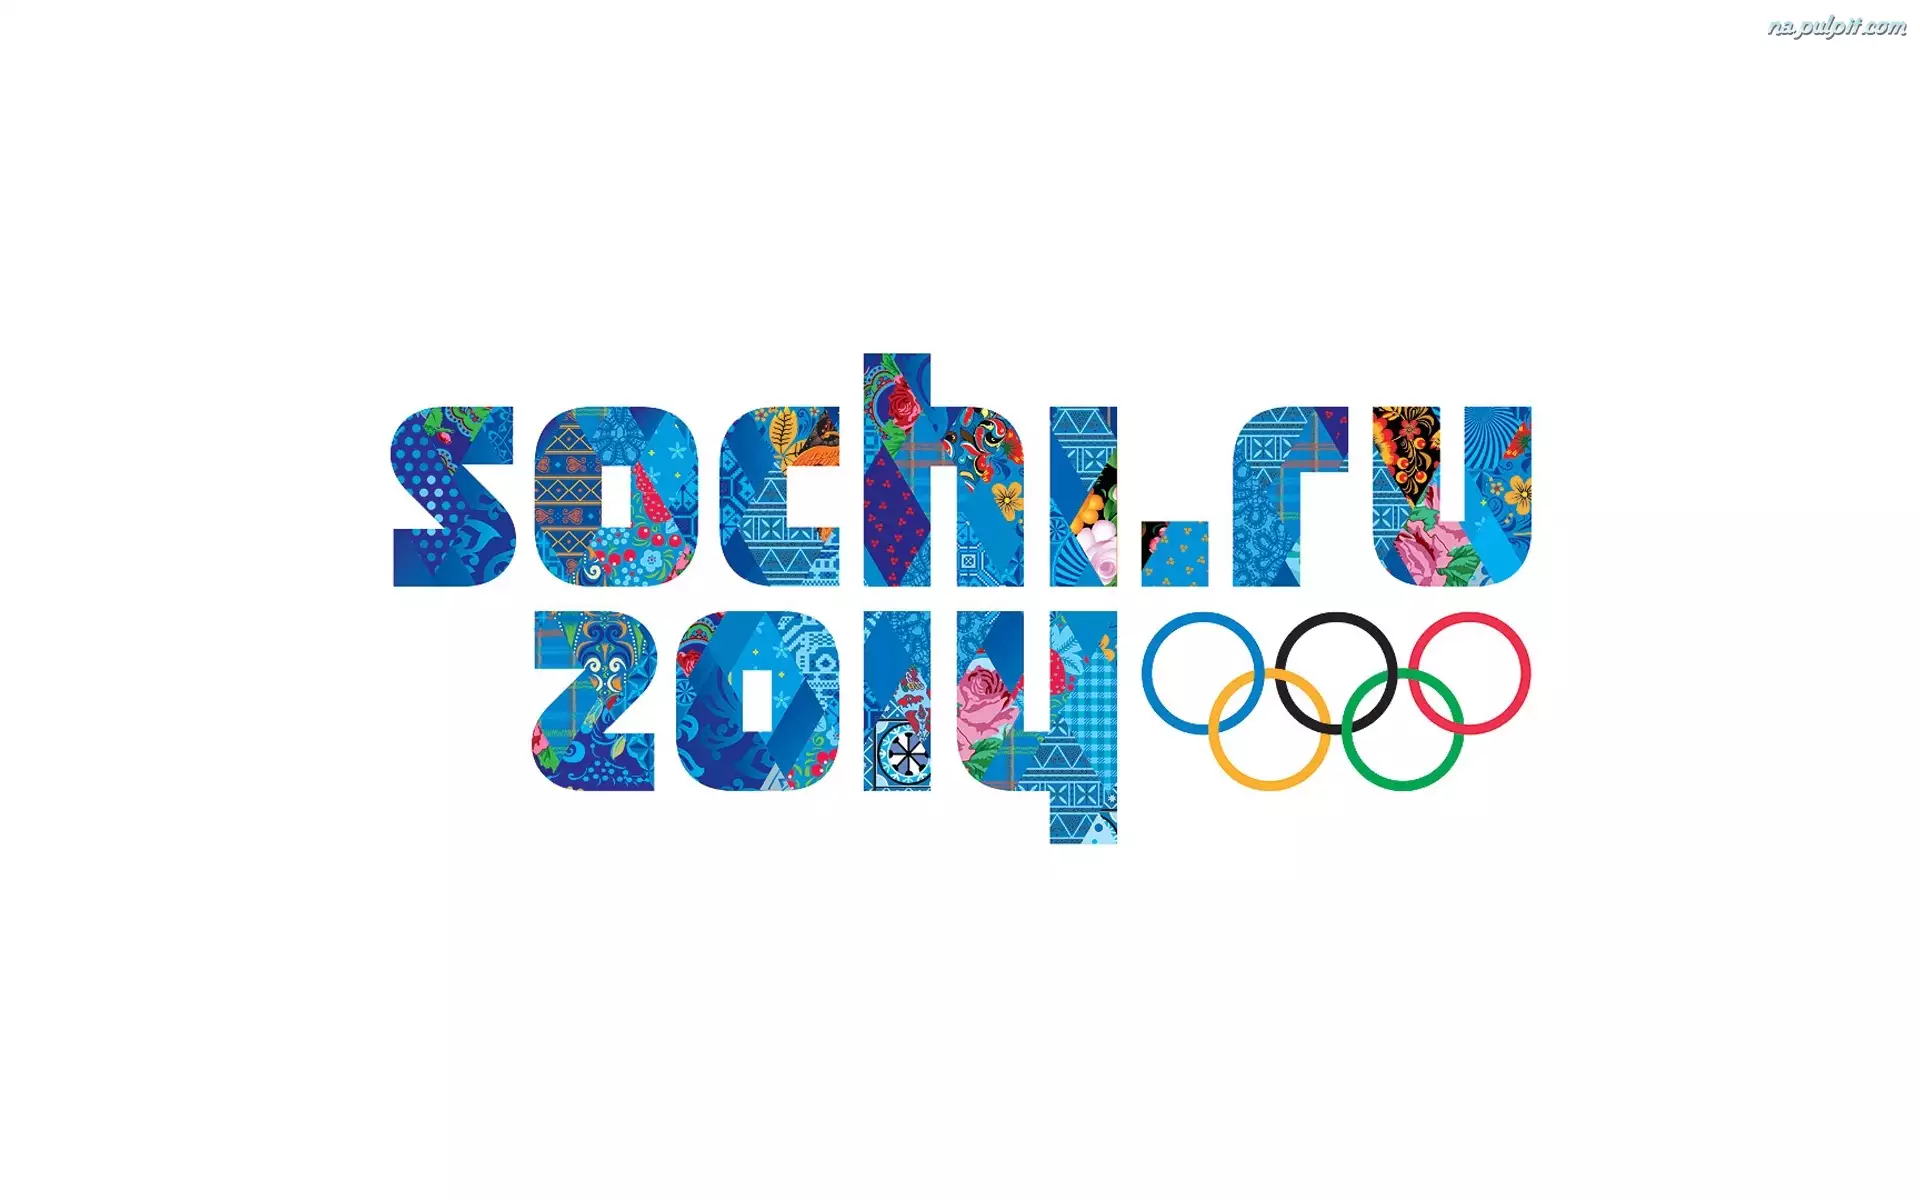 Sochi 2014, Igrzyska, Olimpijskie